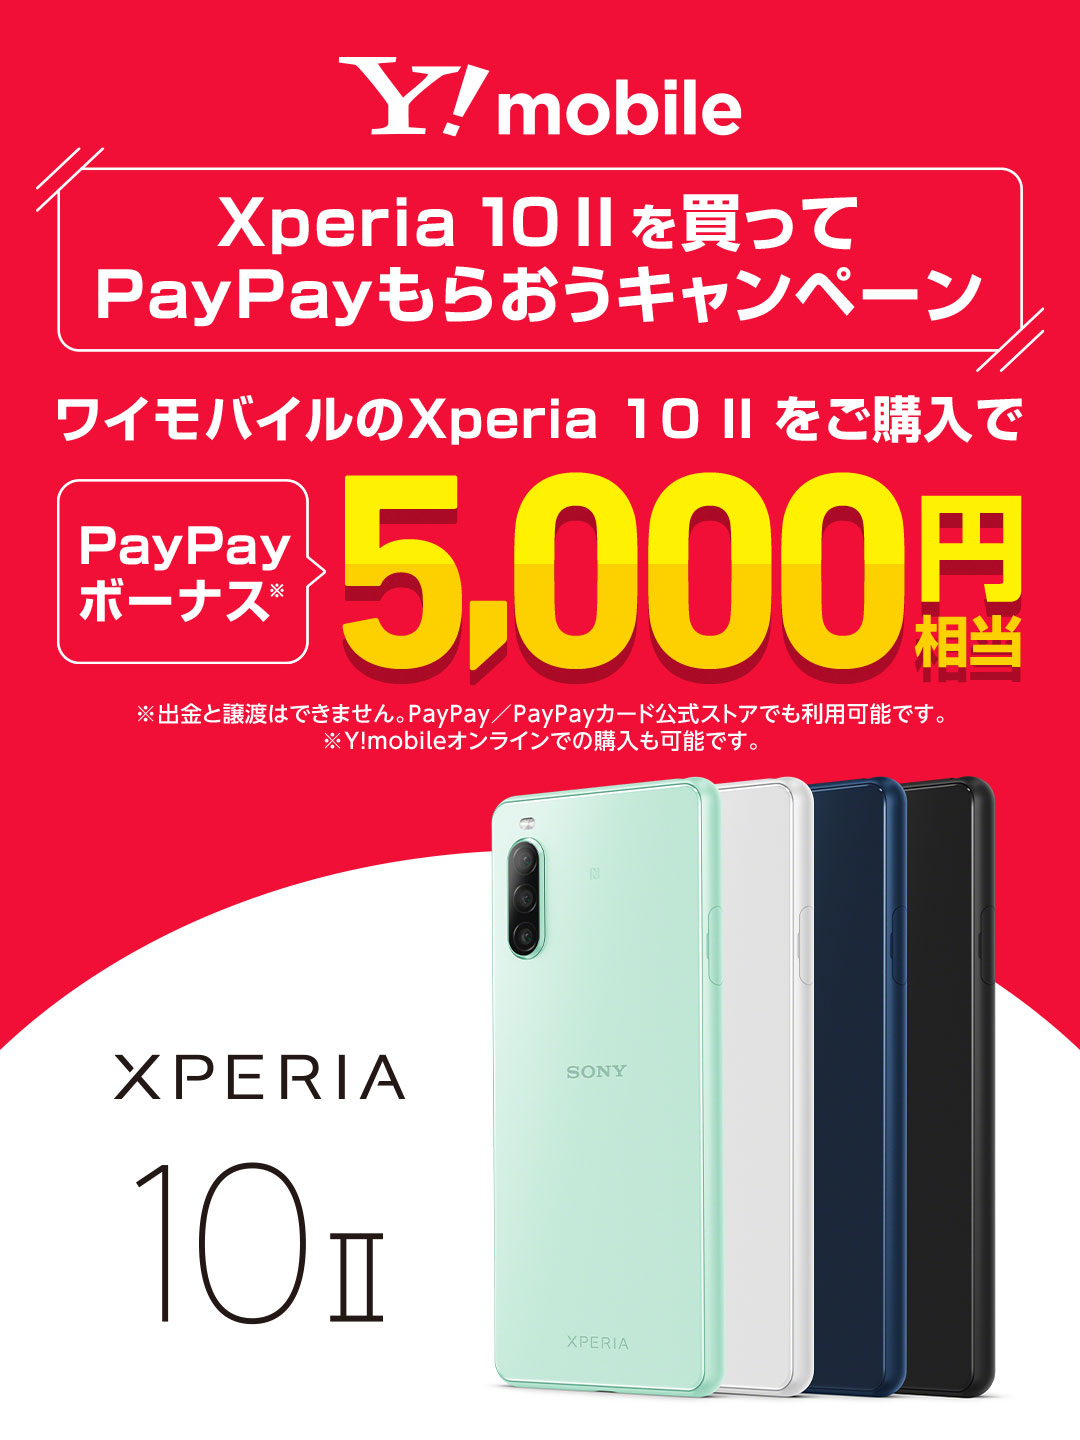 ワイモバイルXperia 10 IIを買ってPayPayもらおうキャンペーン 応募